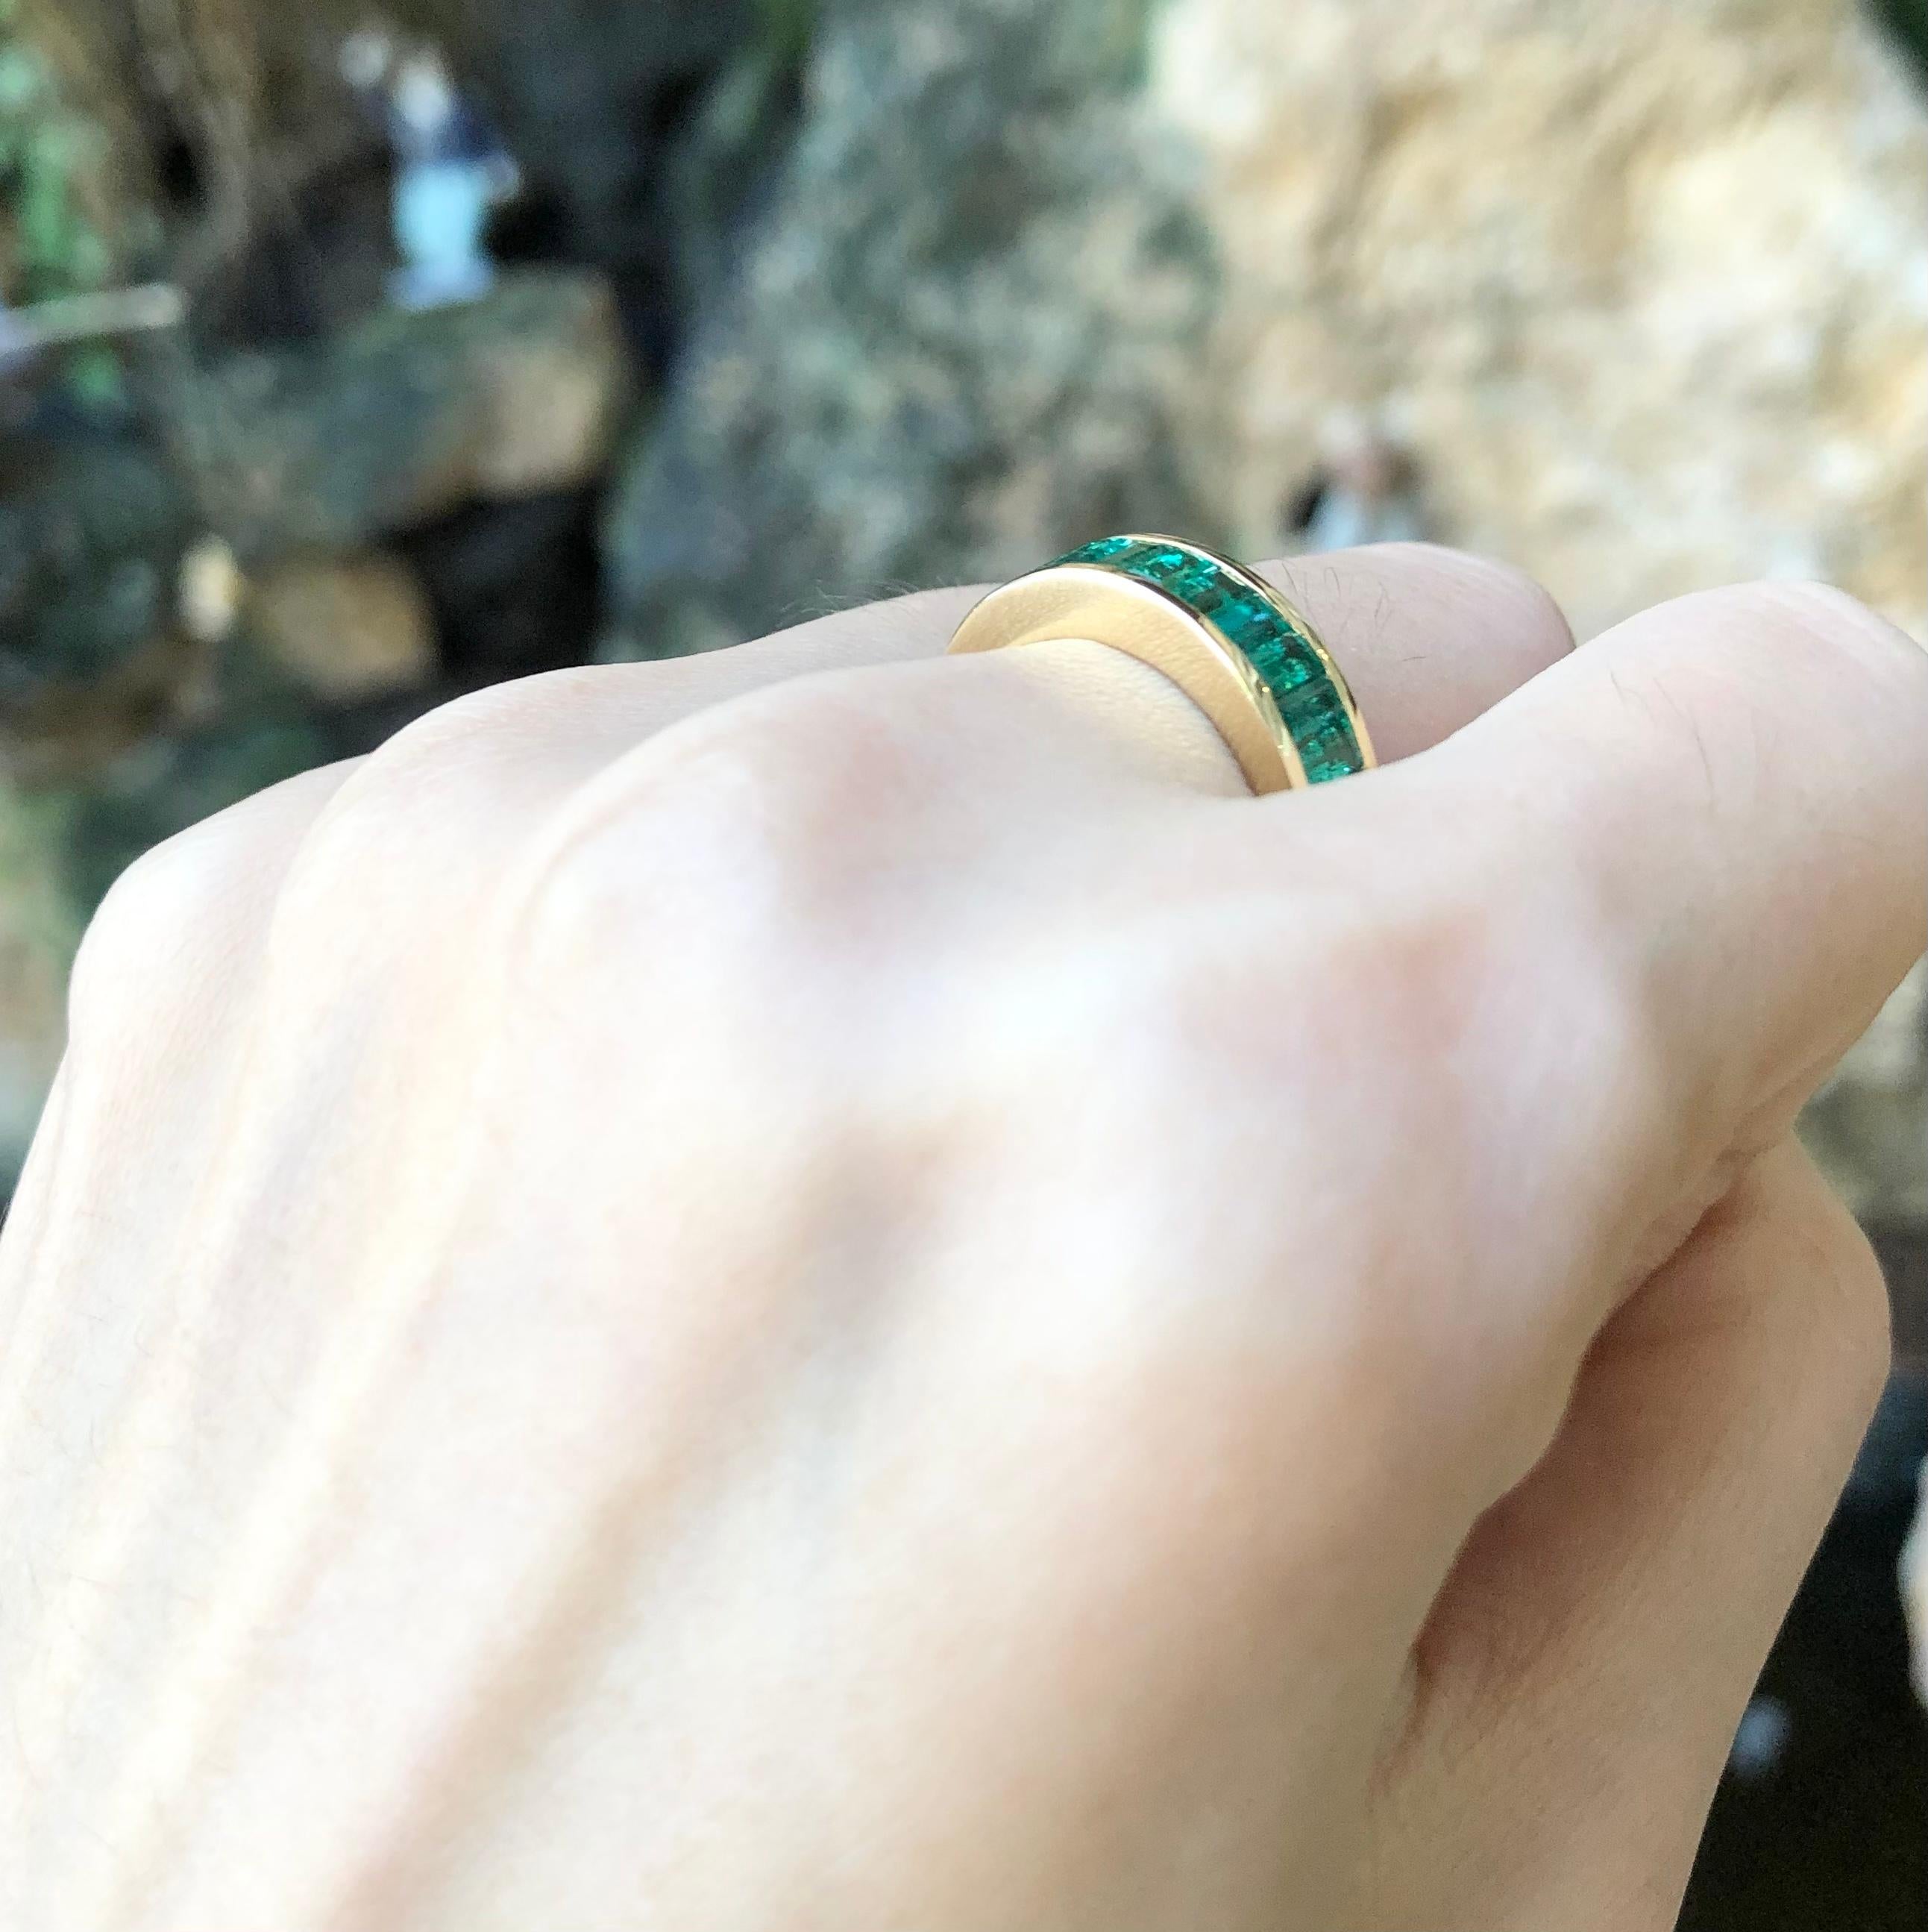 Smaragd 1,70 Karat Ring in 18 Karat Goldfassung

Breite:  2.0 cm 
Länge: 0.5 cm
Ringgröße: 54
Gesamtgewicht: 5.59 Gramm

